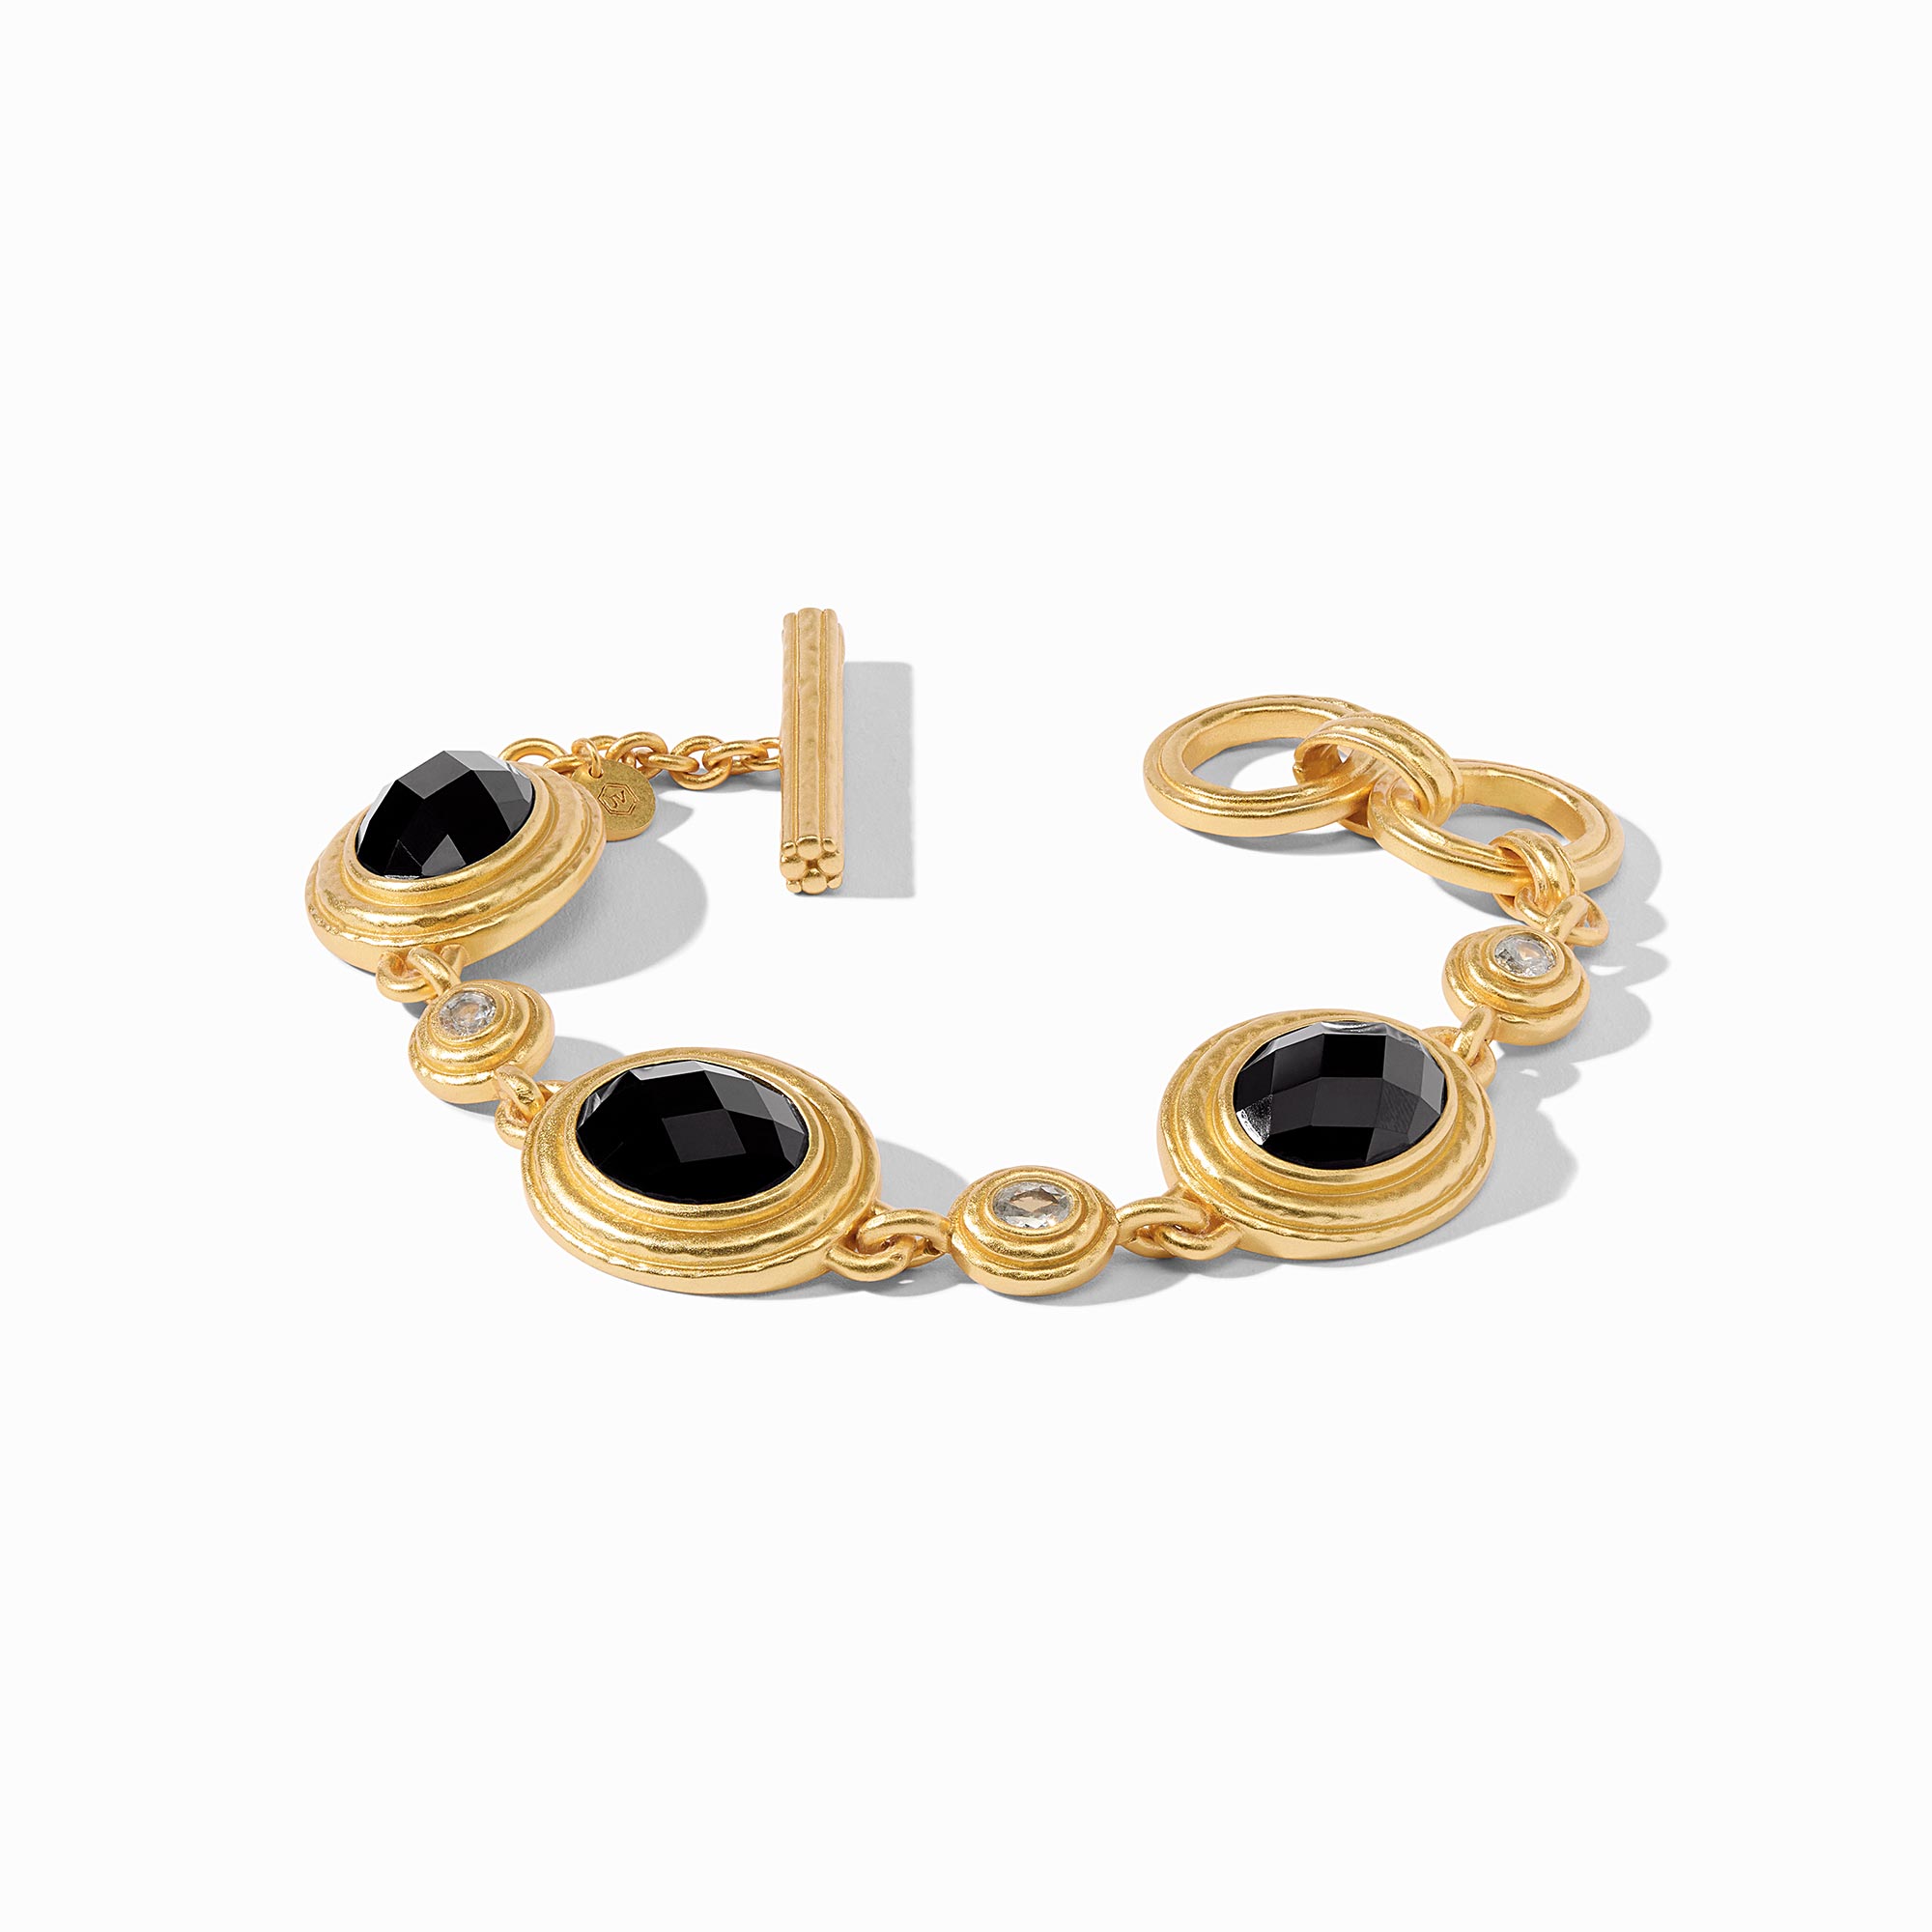 Julie Vos - Tudor Stone Bracelet, Obsidian Black